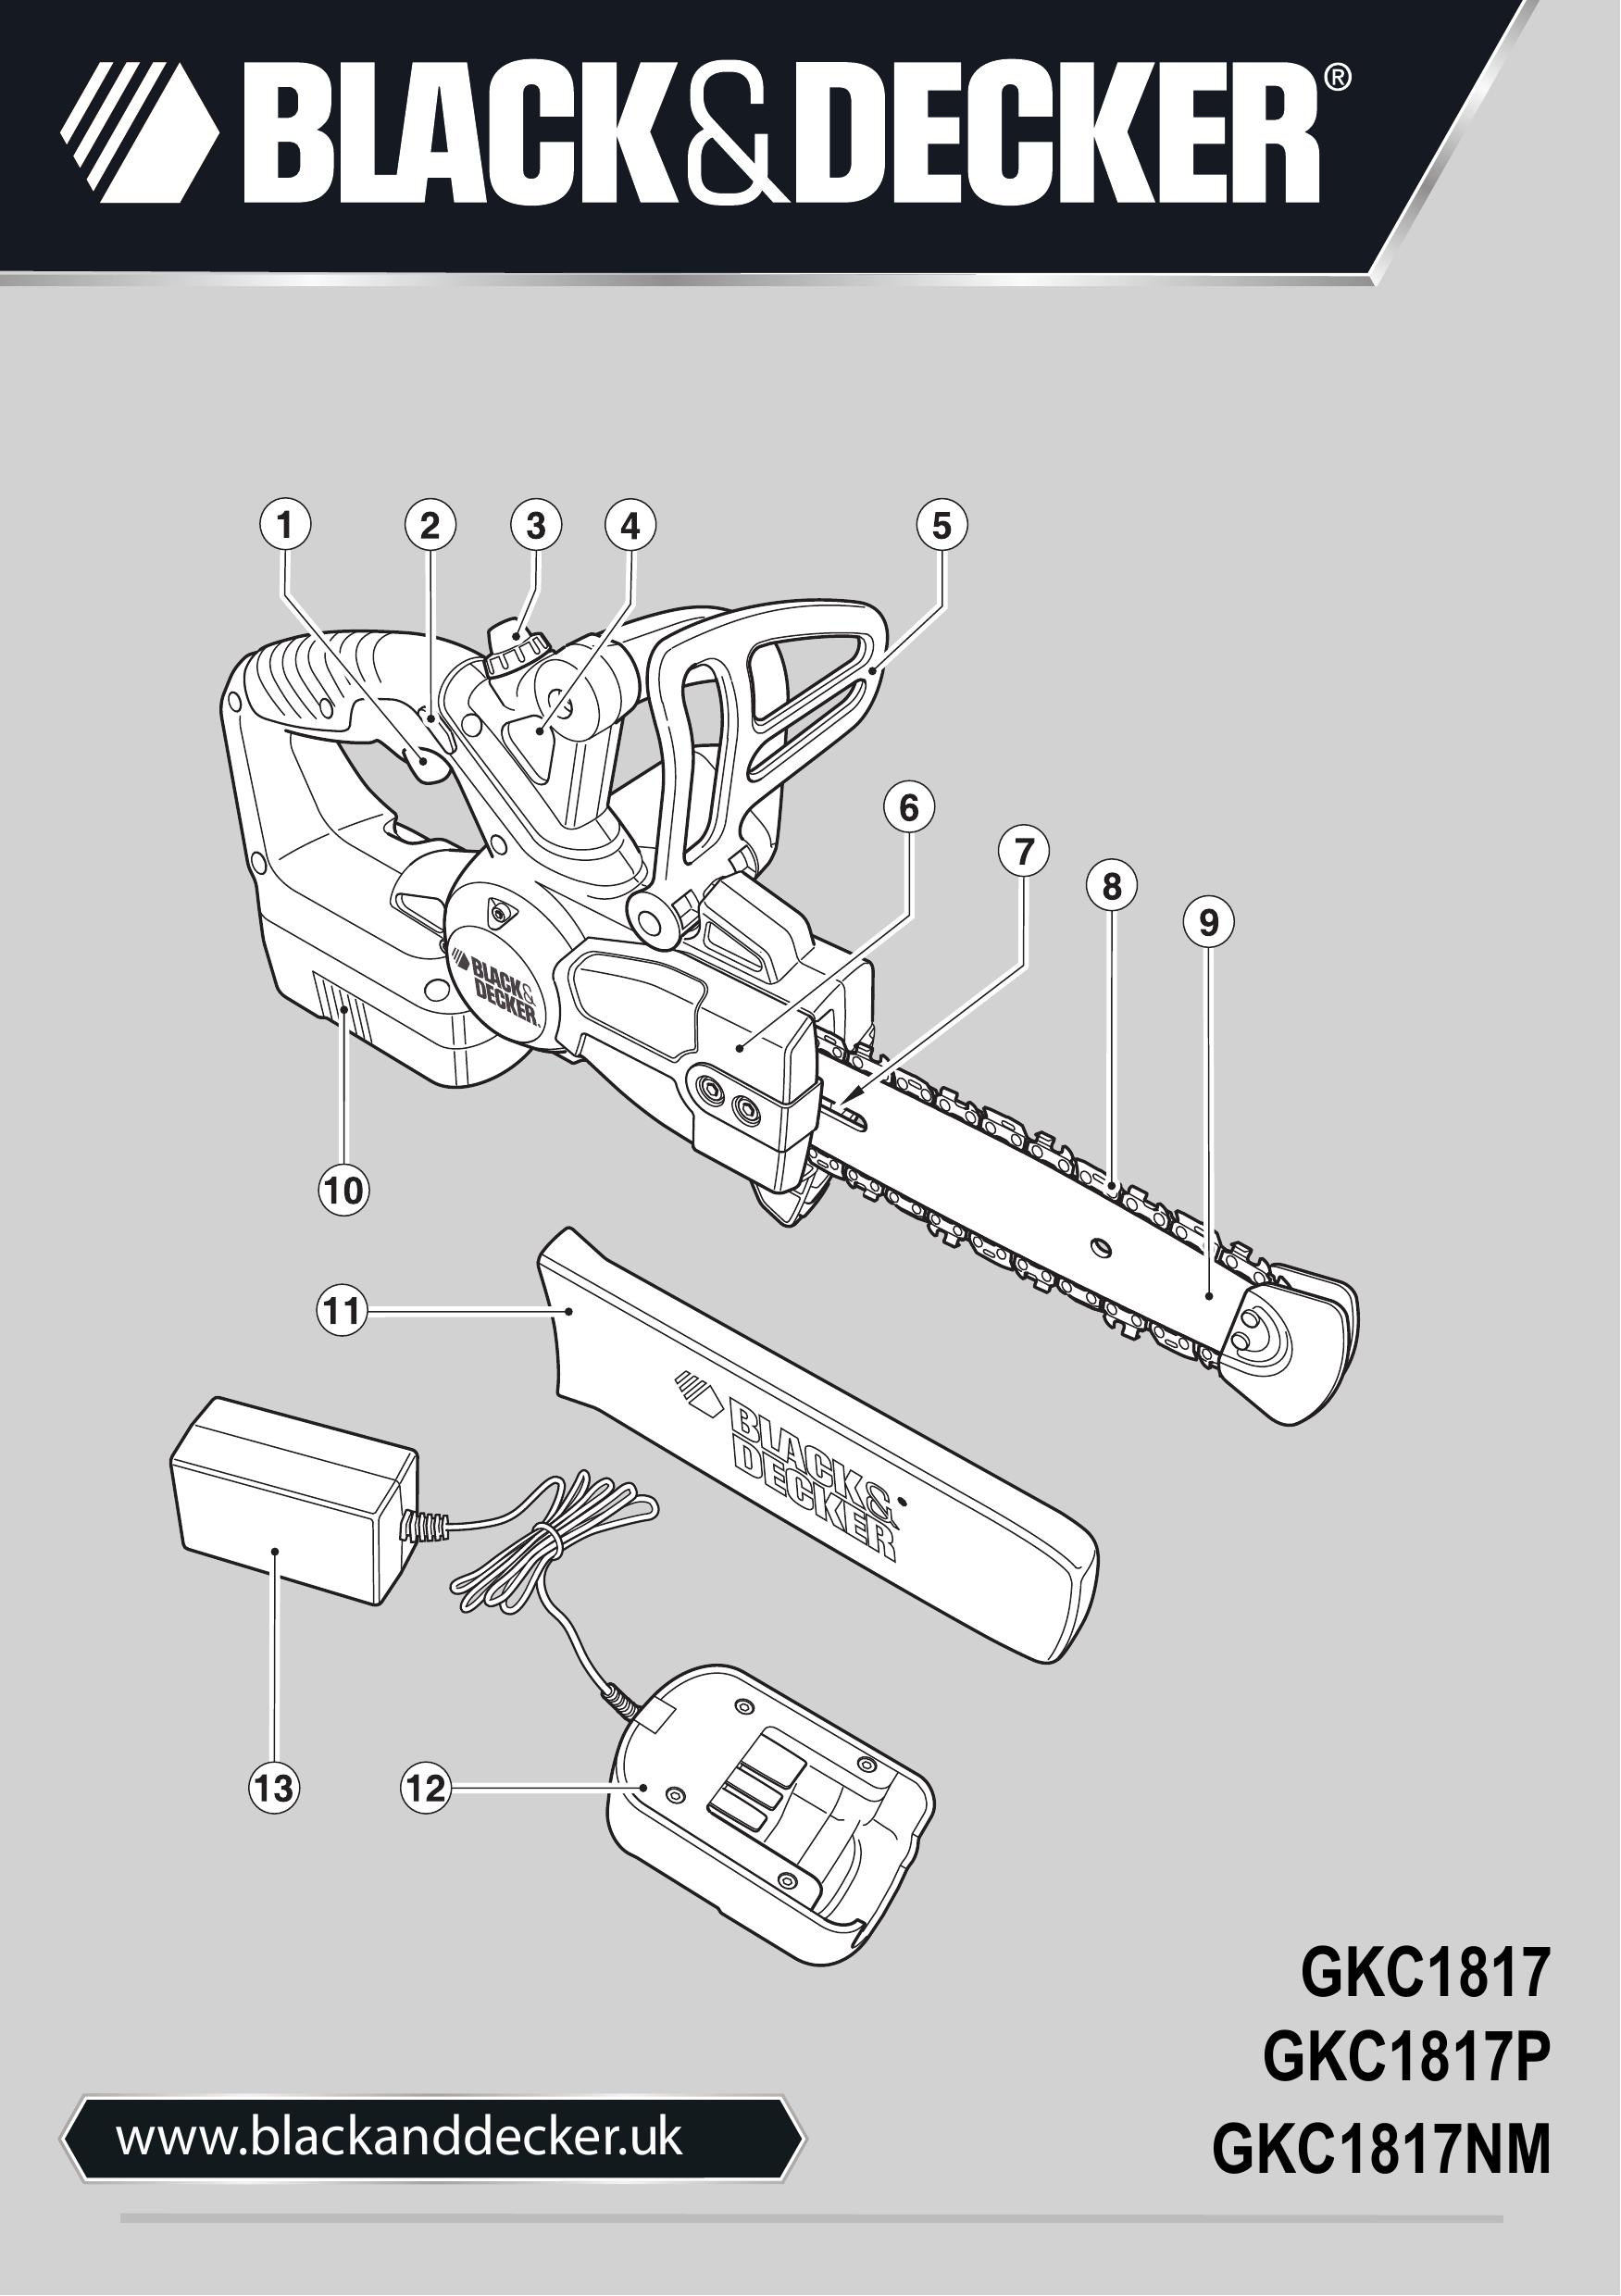 Black & Decker GKC1817NM Chainsaw User Manual